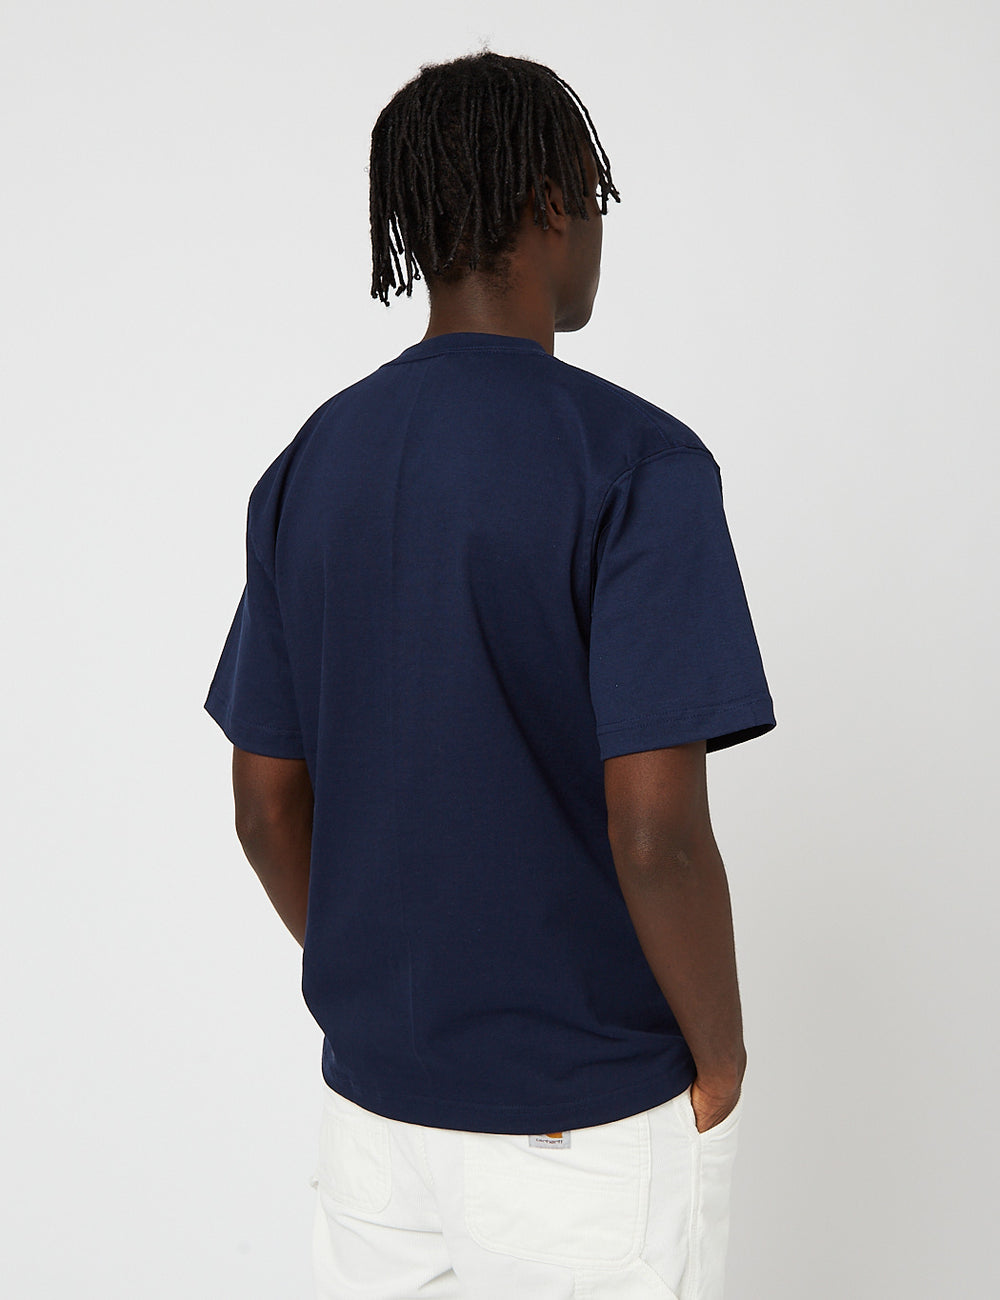 Camber USA 302 Pocket T-Shirt (8oz Cotton) - Marineblau I URBAN EXCESS